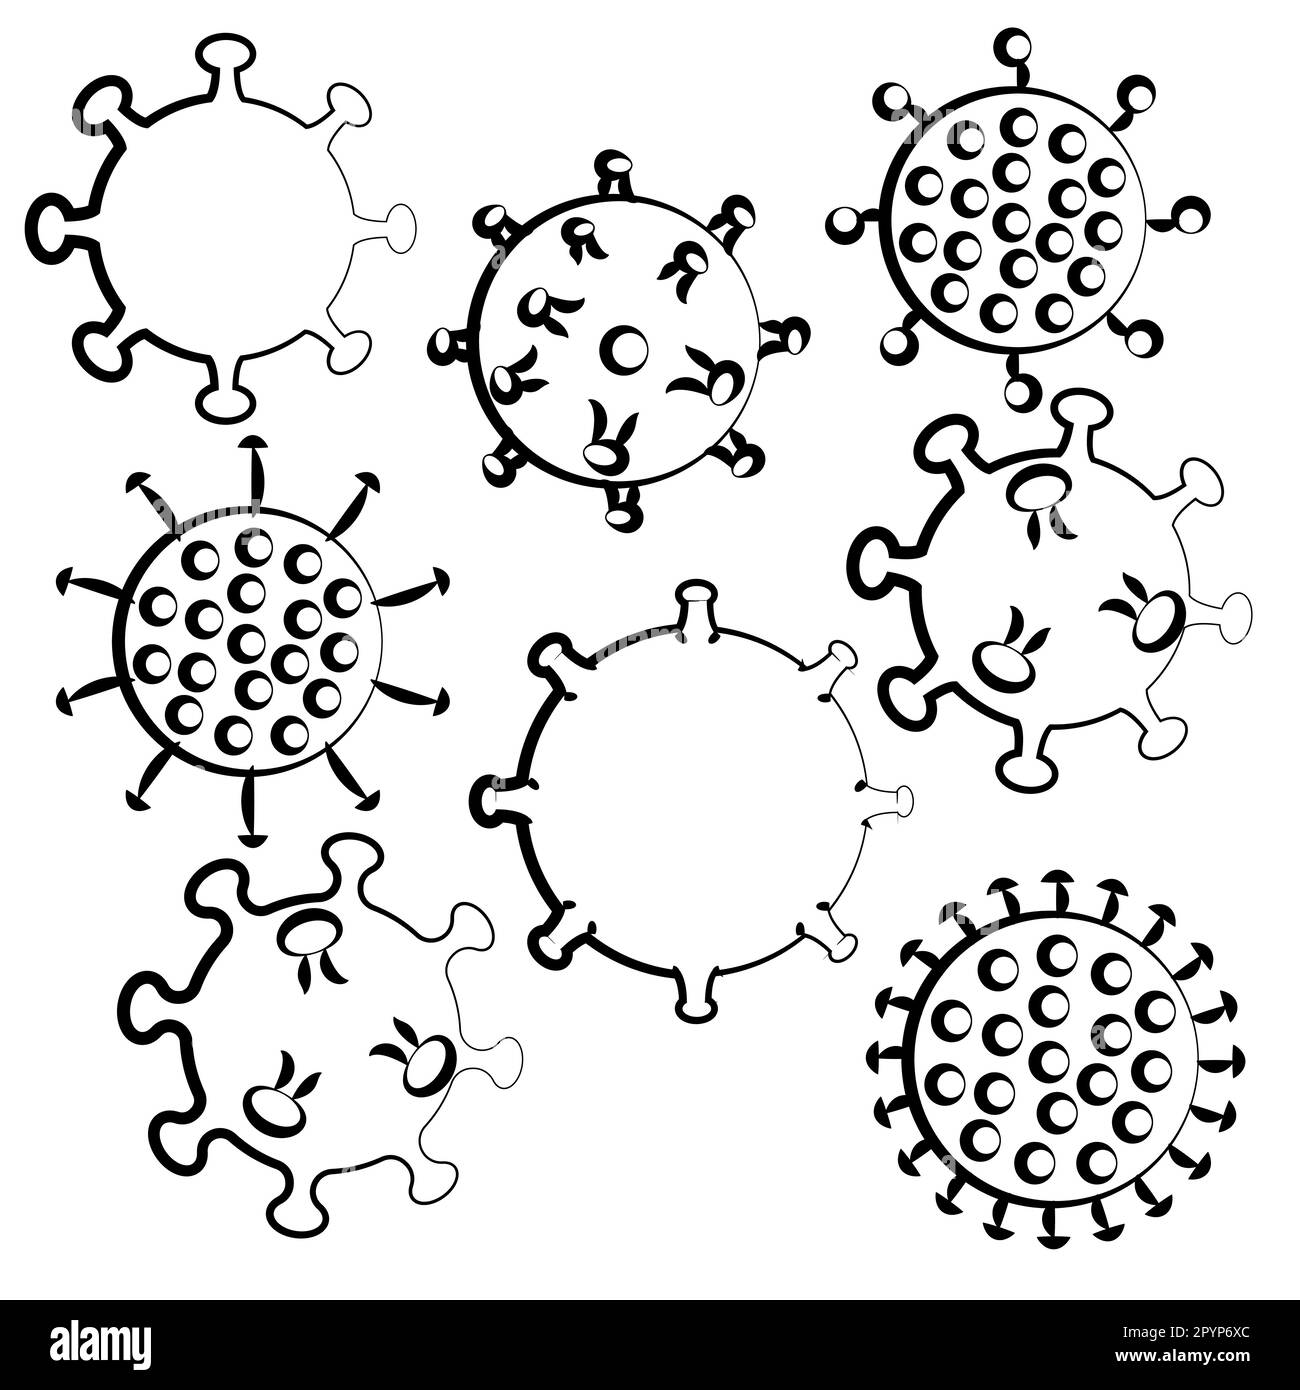 Ensemble d'icônes noir et blanc des virus médicaux microbes dangereux souche mortelle covid 019 coronavirus épidémie de la maladie pandémique. Illustration vectorielle. Illustration de Vecteur